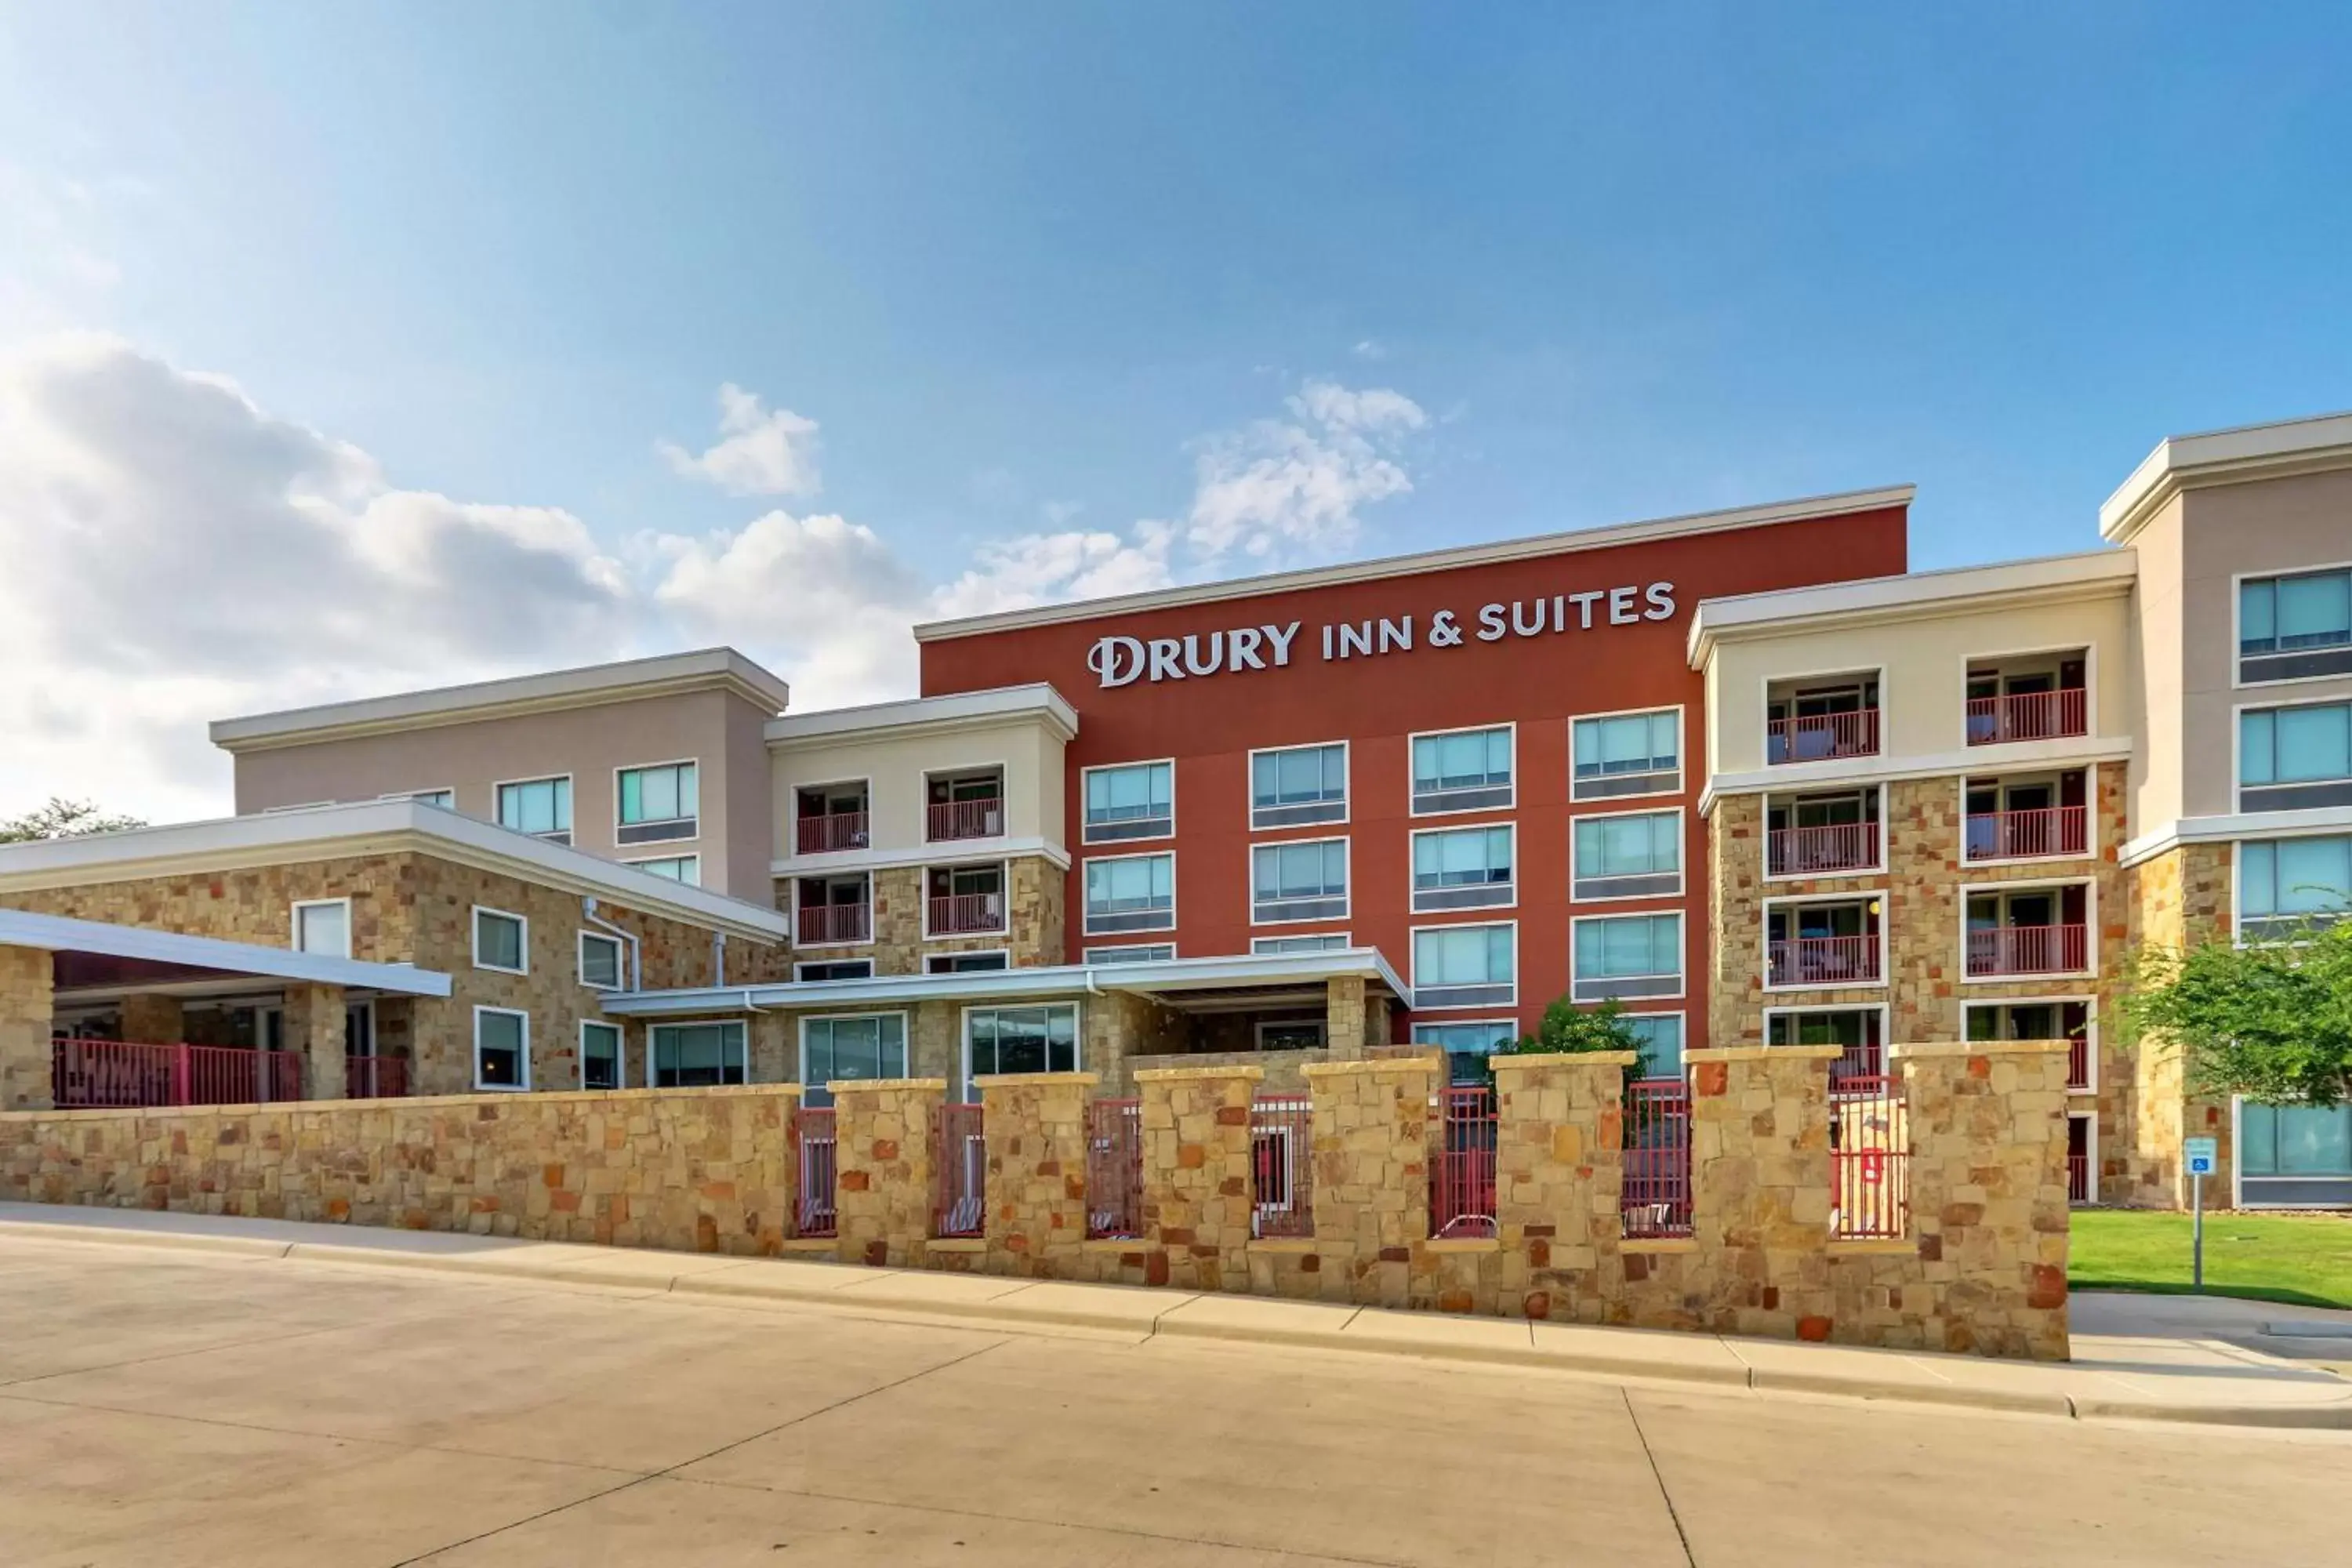 Property Building in Drury Inn & Suites San Antonio Airport